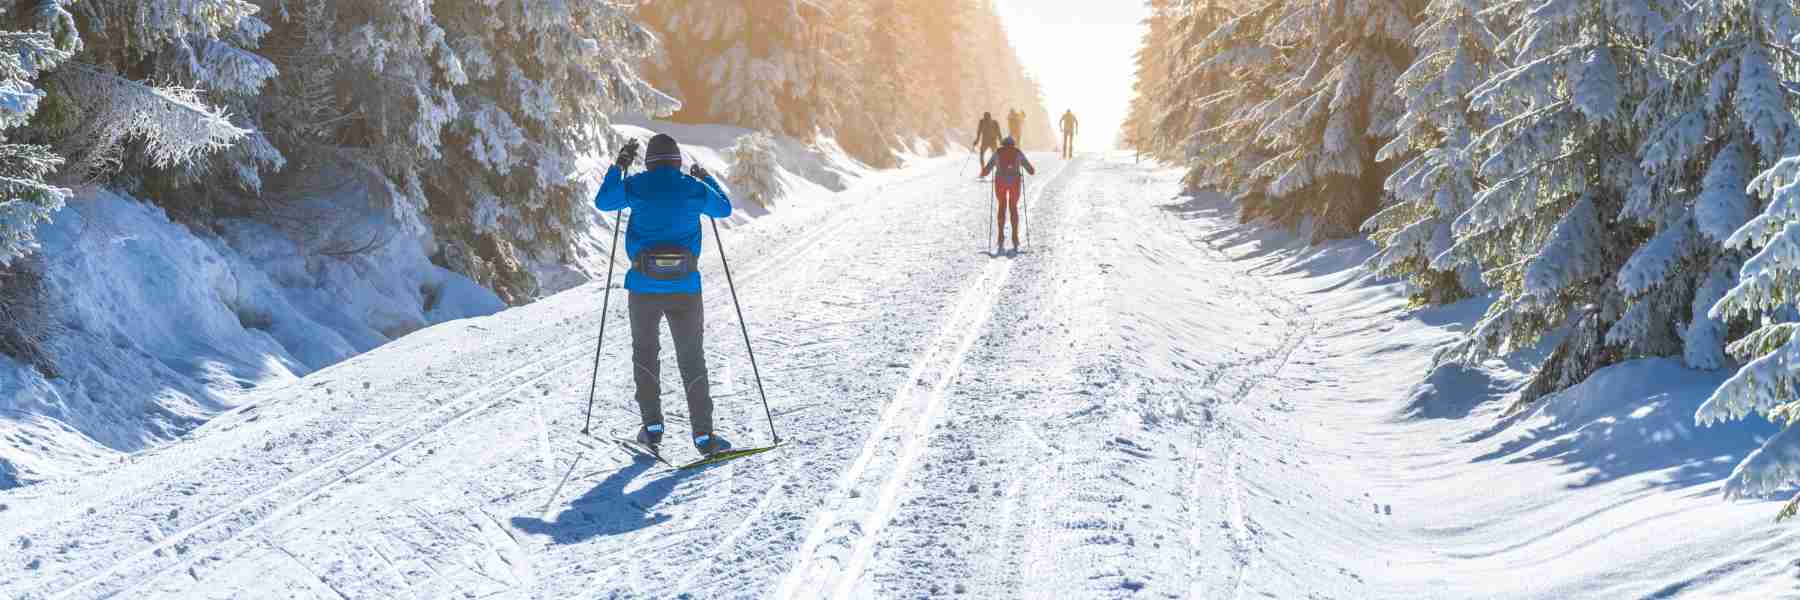 Winter Activities In Bozeman | Cross Country Skiing